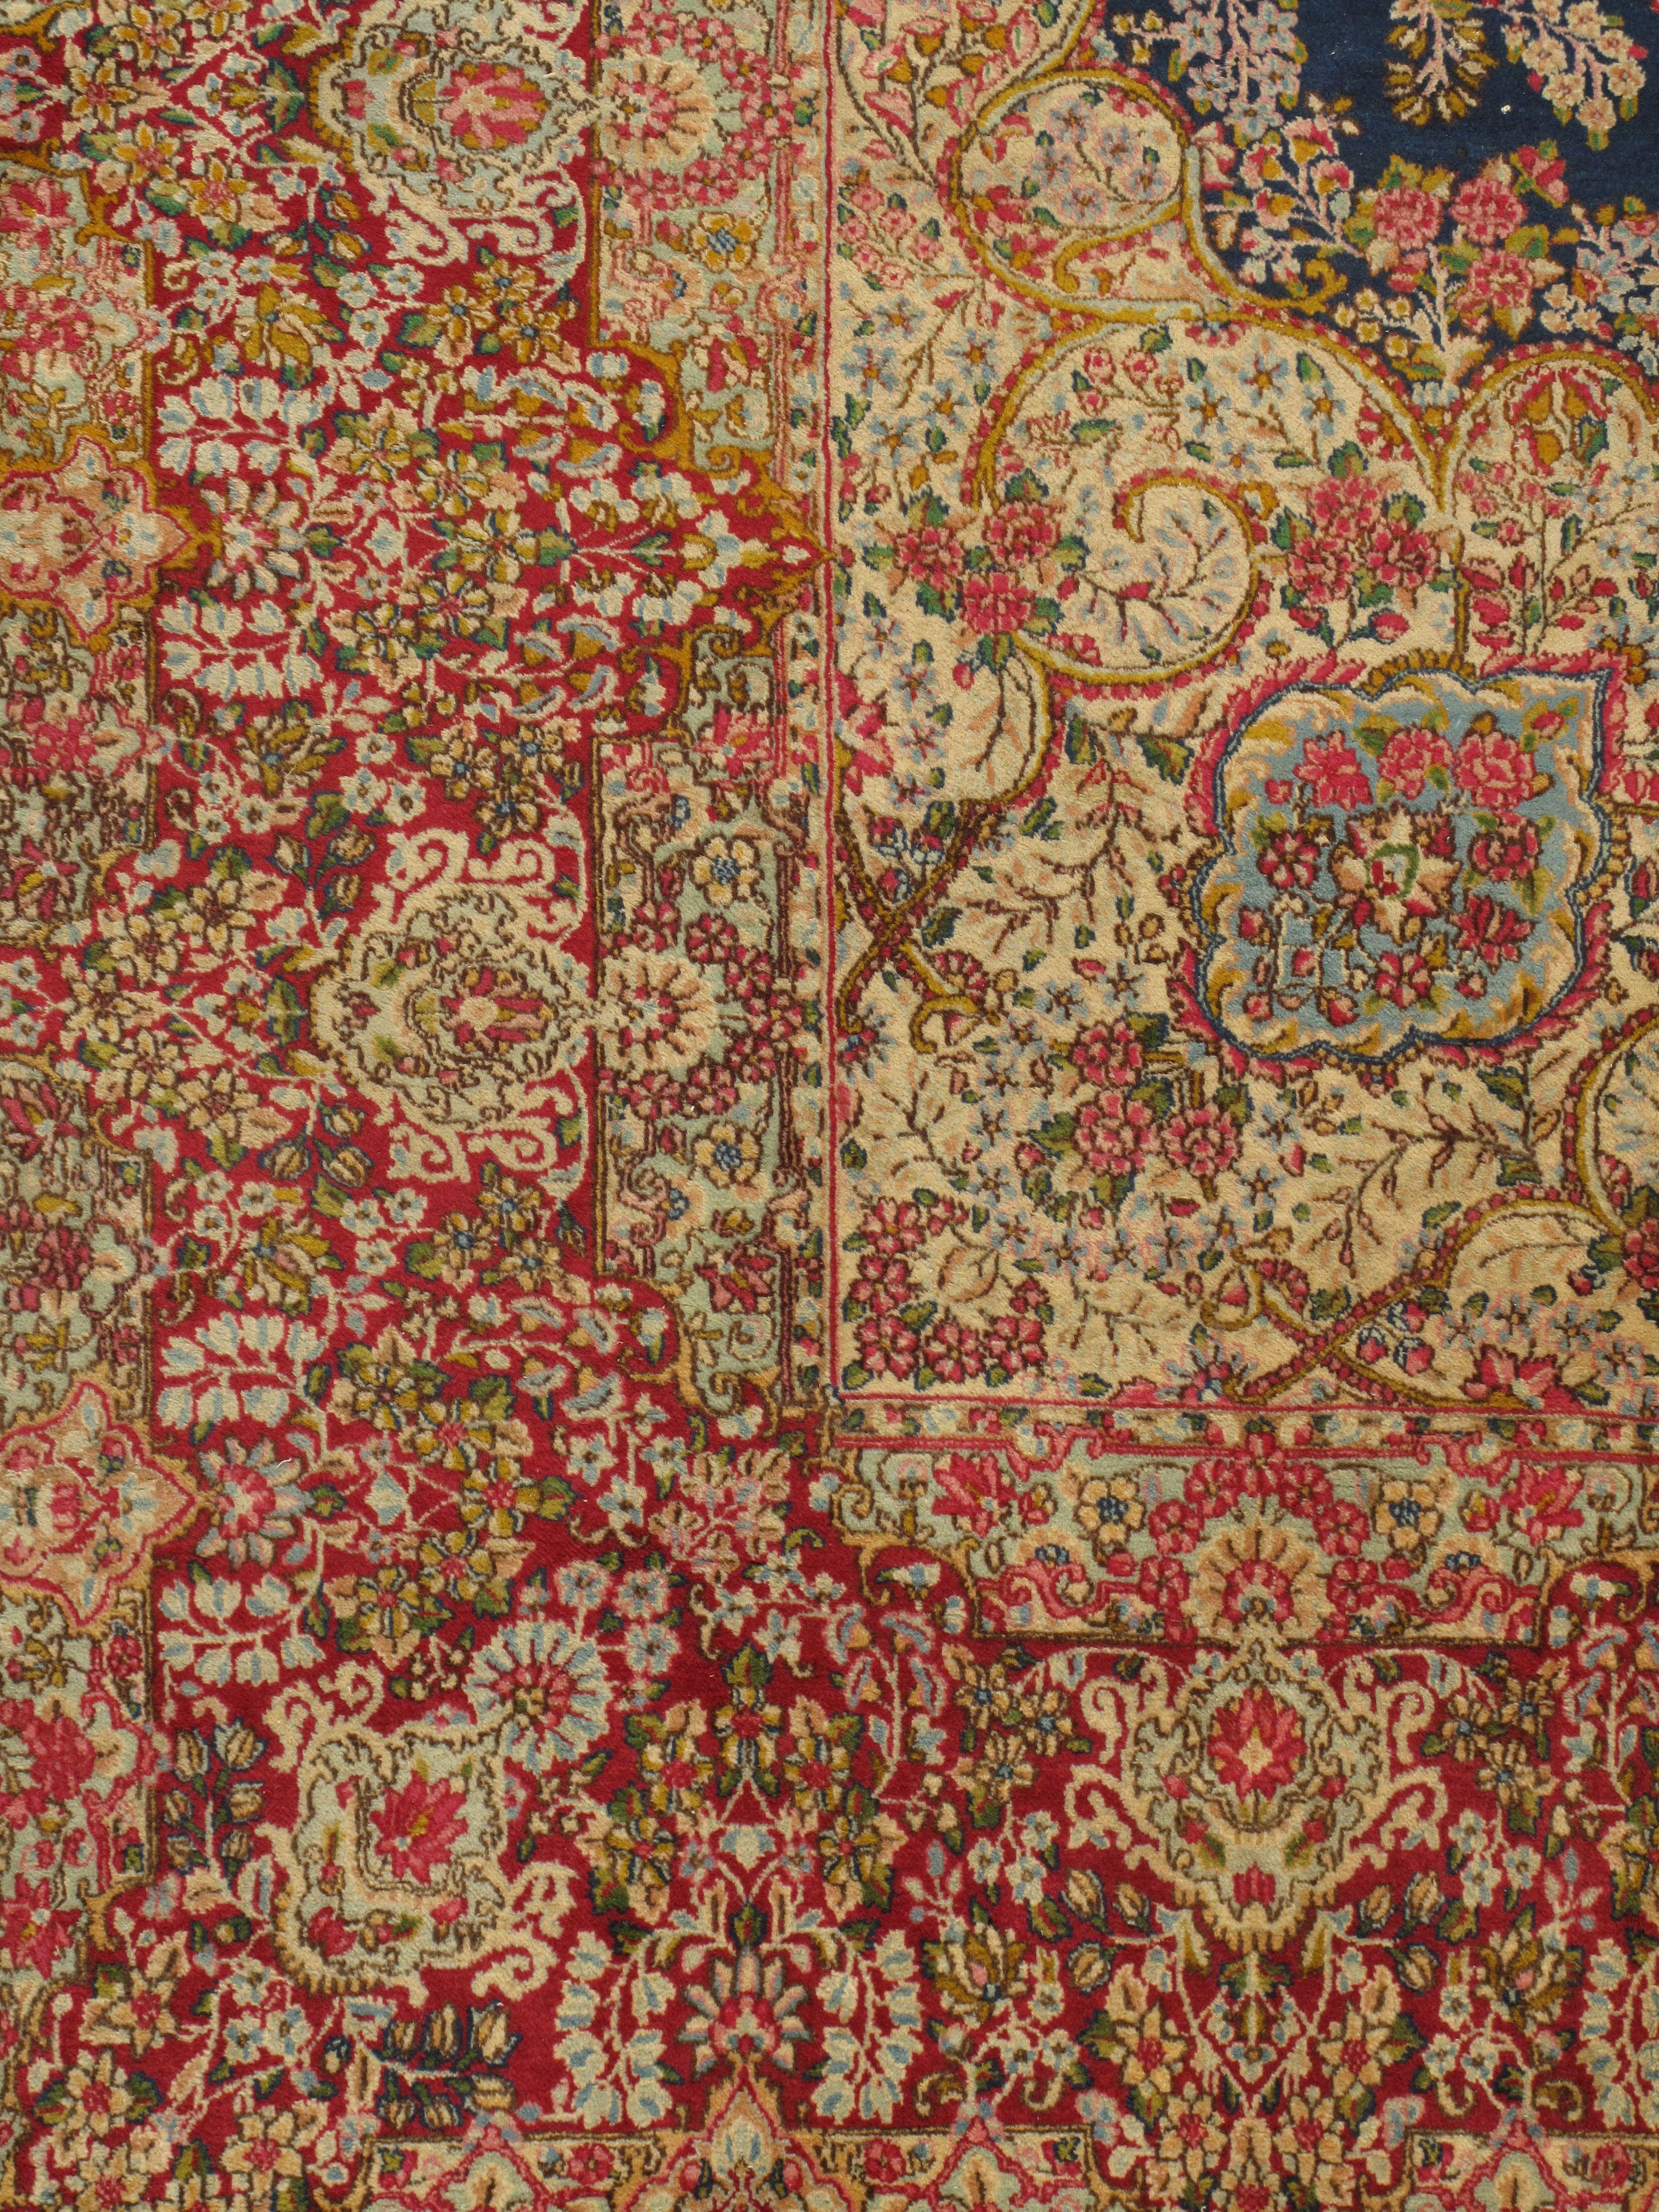 Tapis Persan Kerman vintage, circa 1920, 9'7 x 12'7. Les détails de cet exquis tapis persan Kirman des années 1920 témoignent du travail d'un véritable maître tisserand. La bordure se fond dans le champ et le contour central bleu foncé contribue à